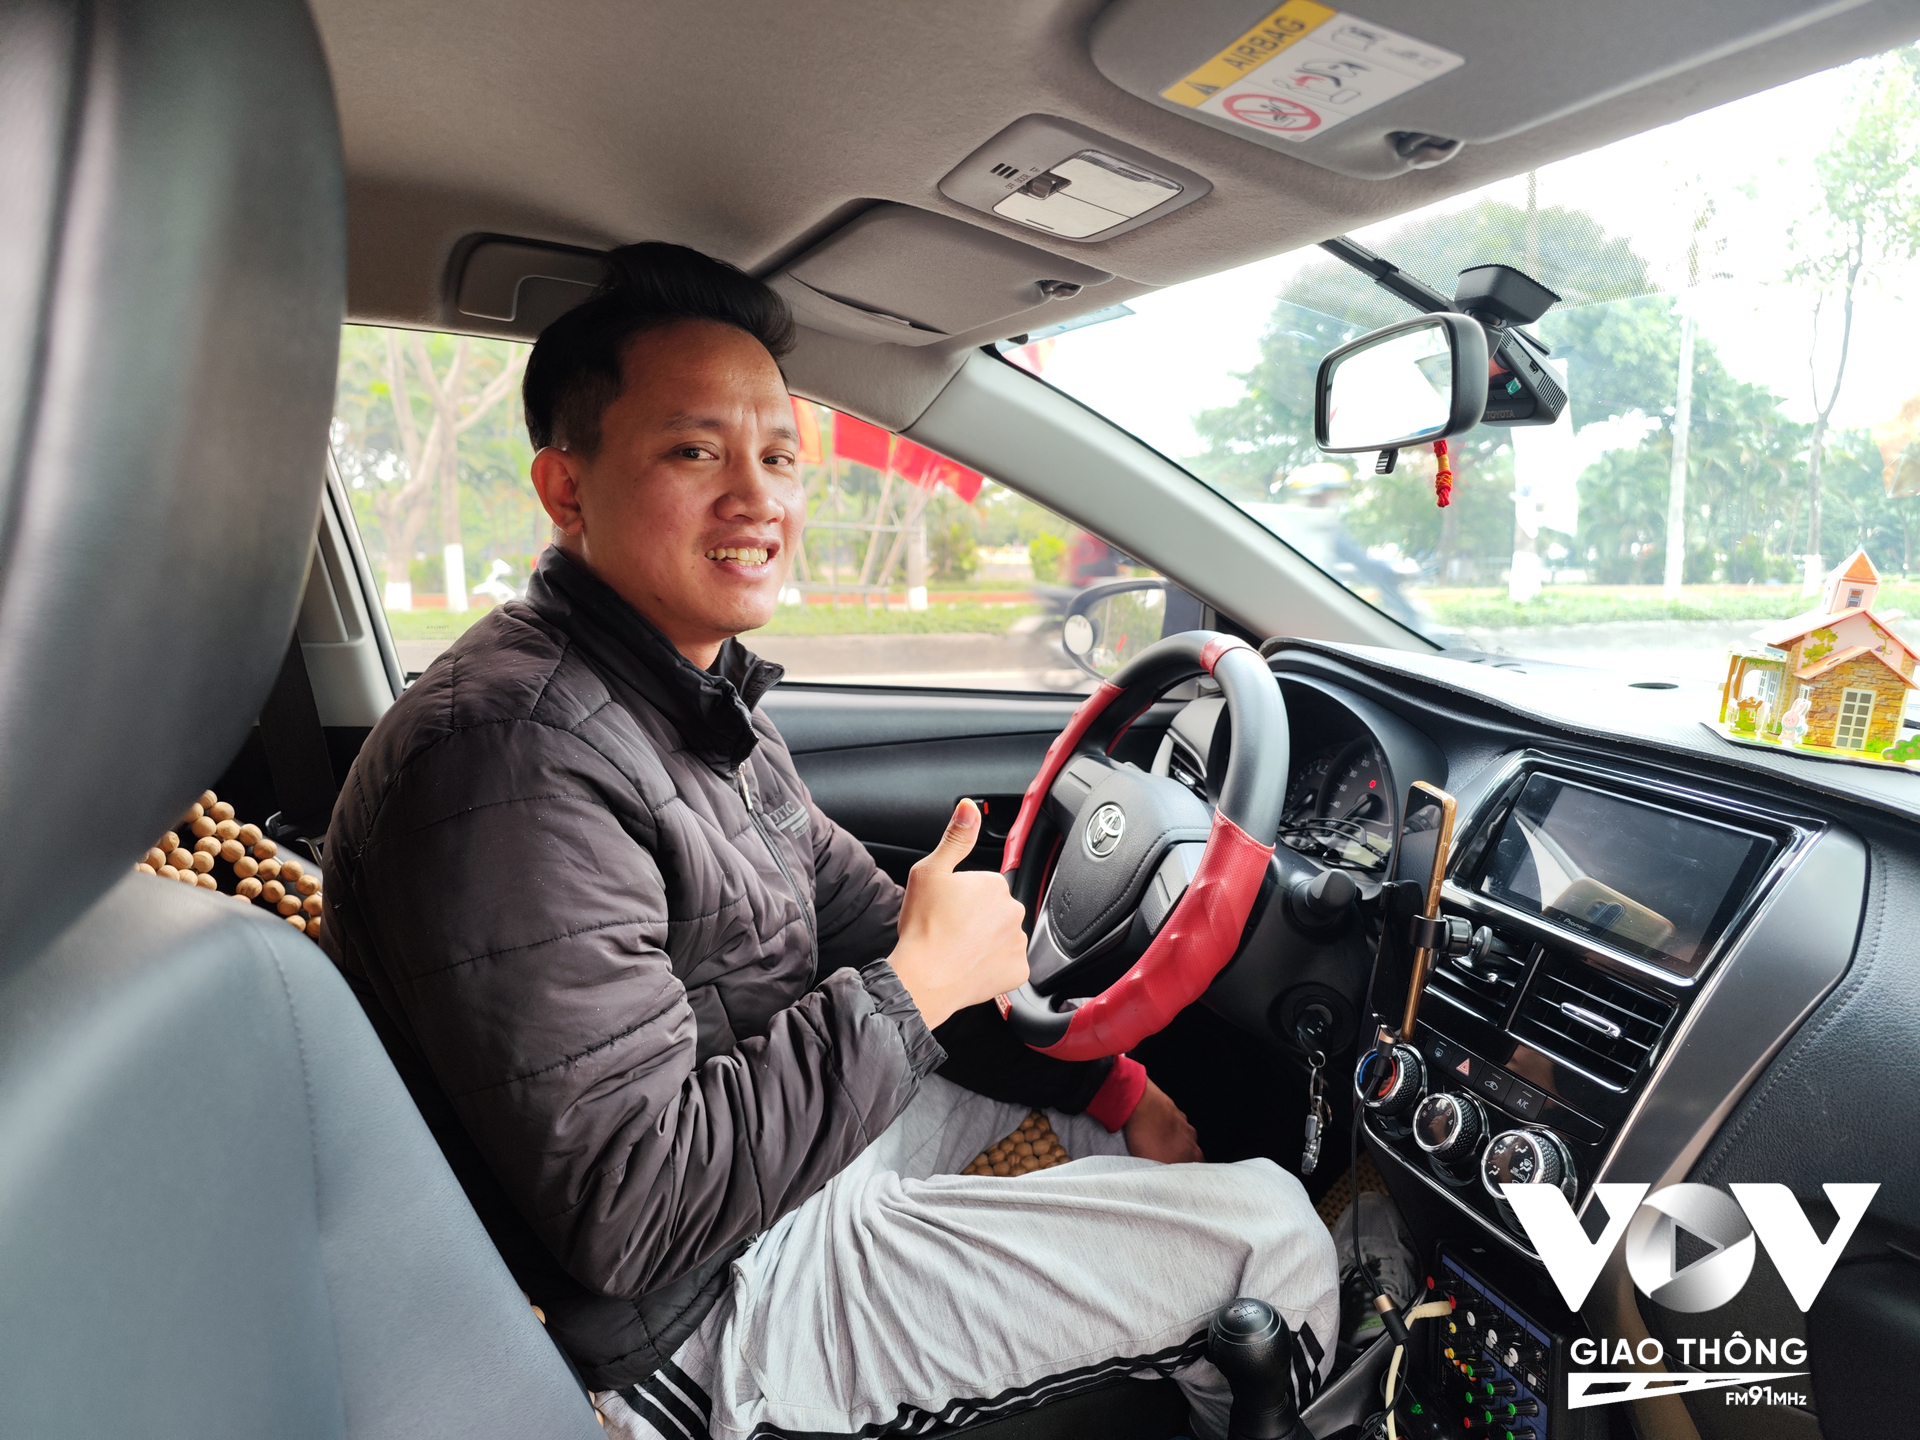 Anh Nguyễn Trọng Nam, tài xế taxi ở quận Hà Đông, Hà Nội cho rằng, từ ngày ít dùng còi xe, anh cảm thấy thoái mái, ít căng thẳng ức chế hơn hẳn